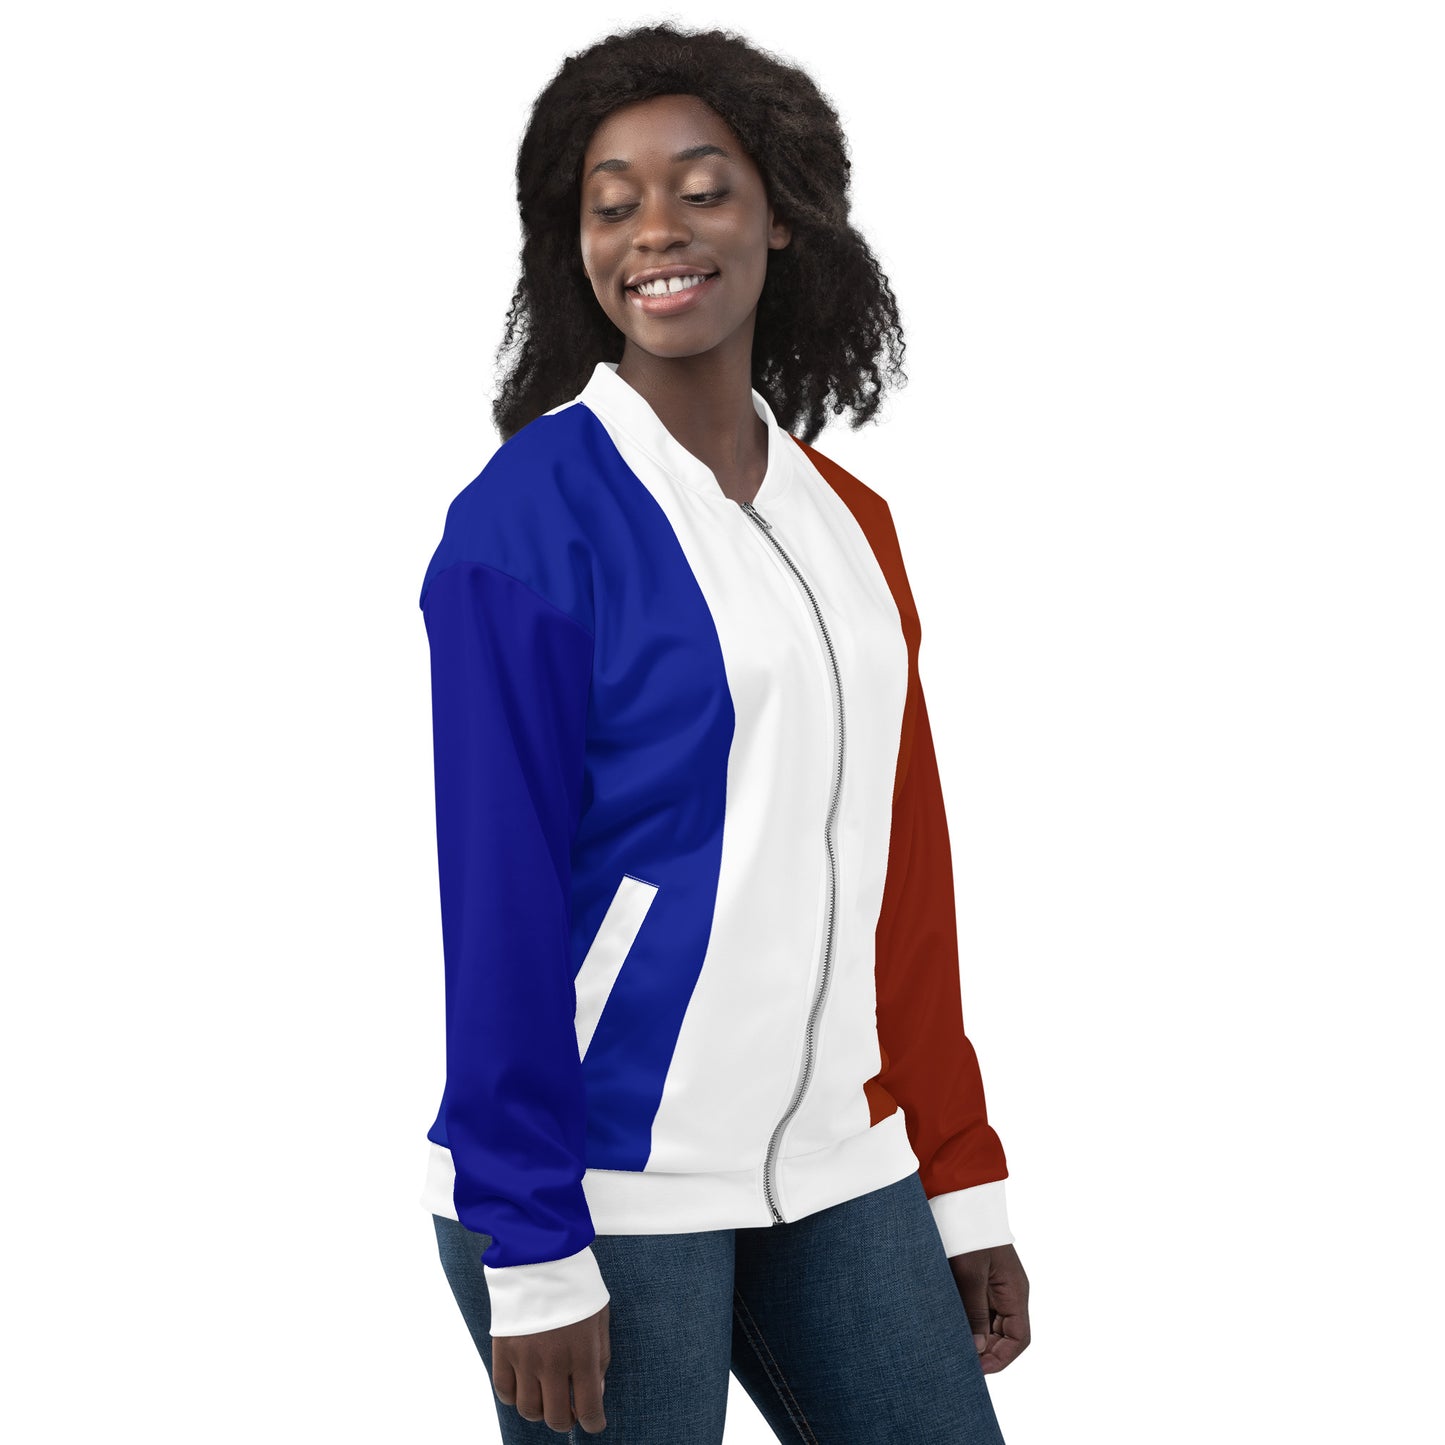 Französische Jacke / Bomberjacke mit Farben der französischen Flagge / Unisex-Kleidung